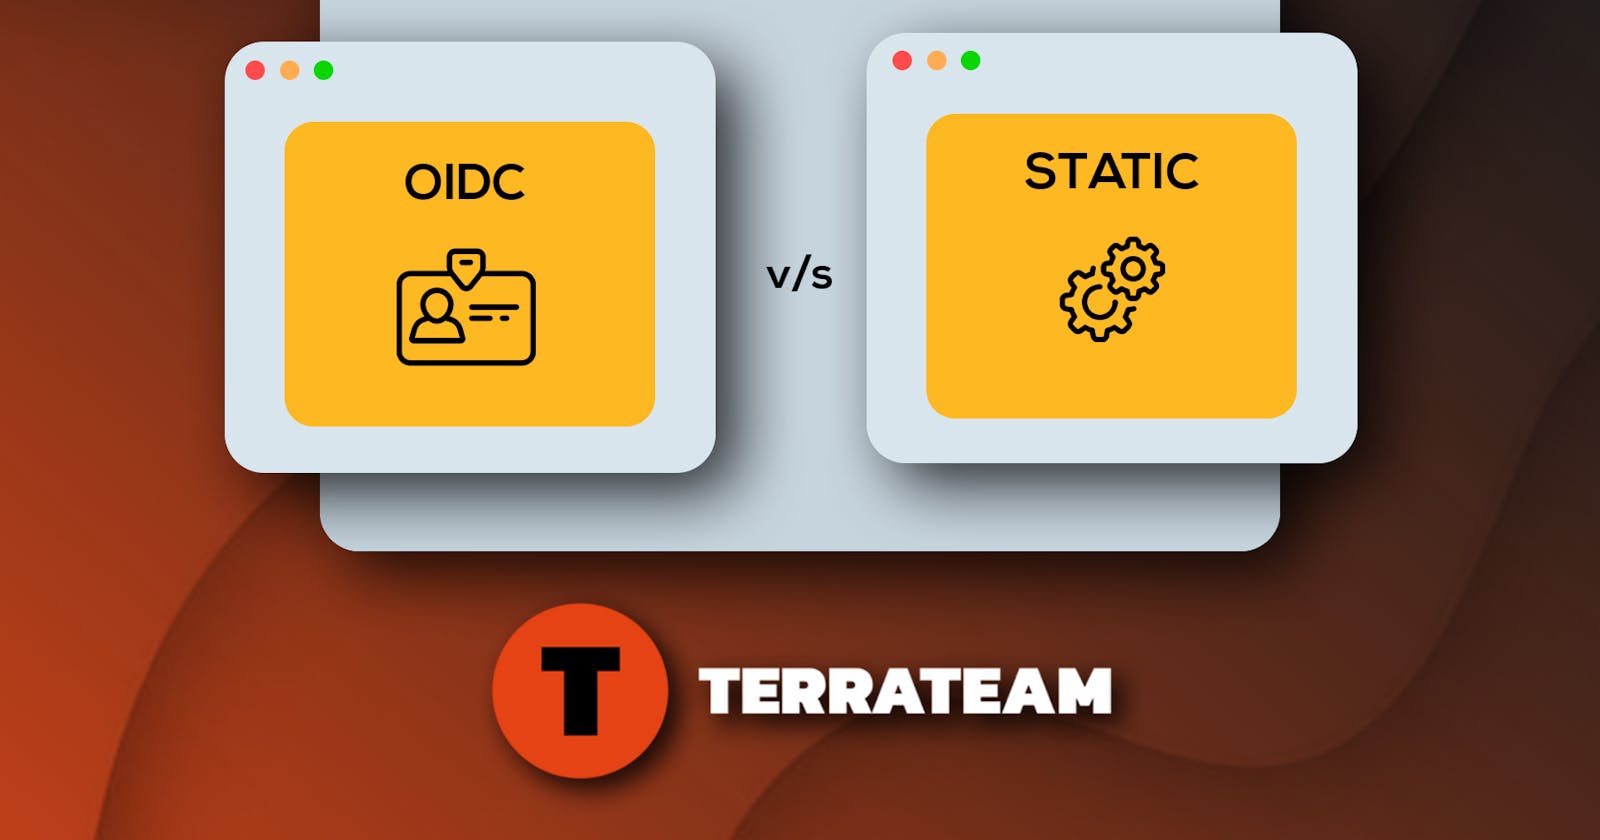 Terrateam 
OIDC vs Static Credentials